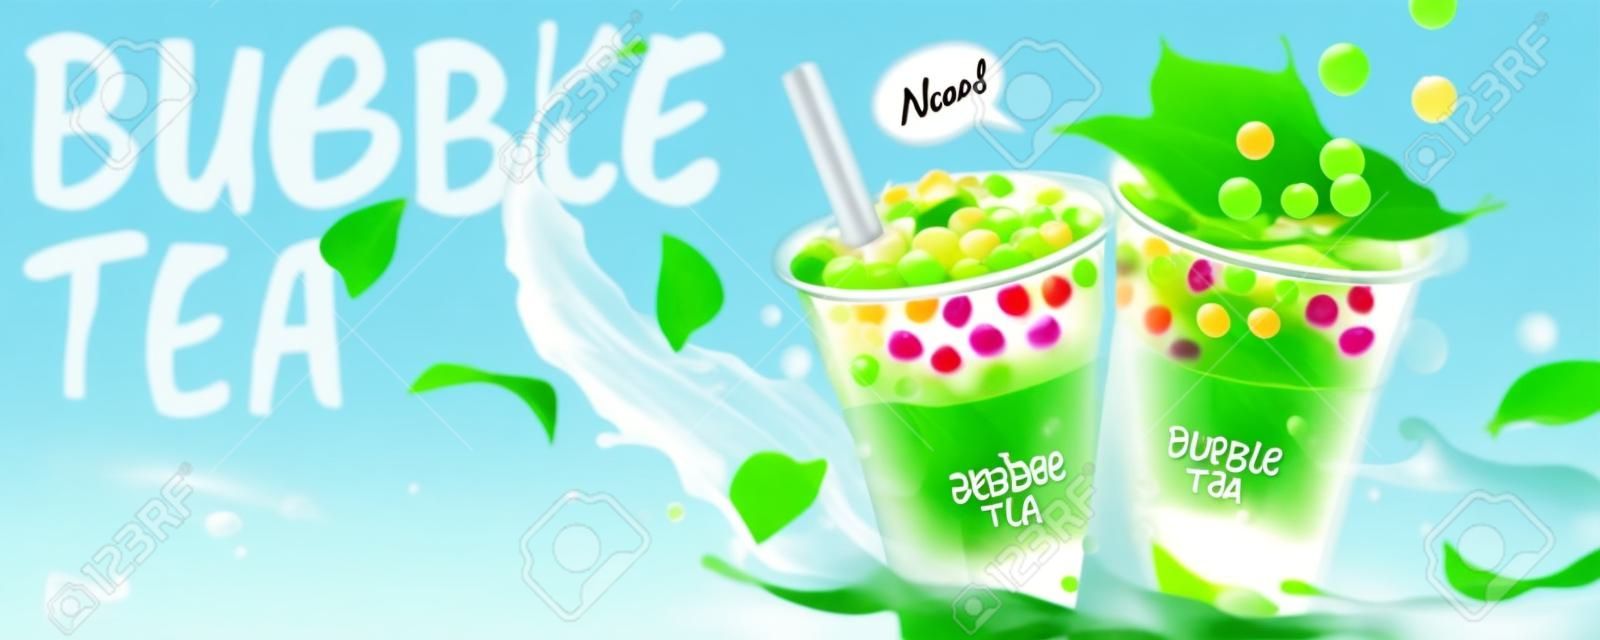 Annunci di banner di Bubble Tea con spruzzi di latte e foglie verdi, illustrazione 3d